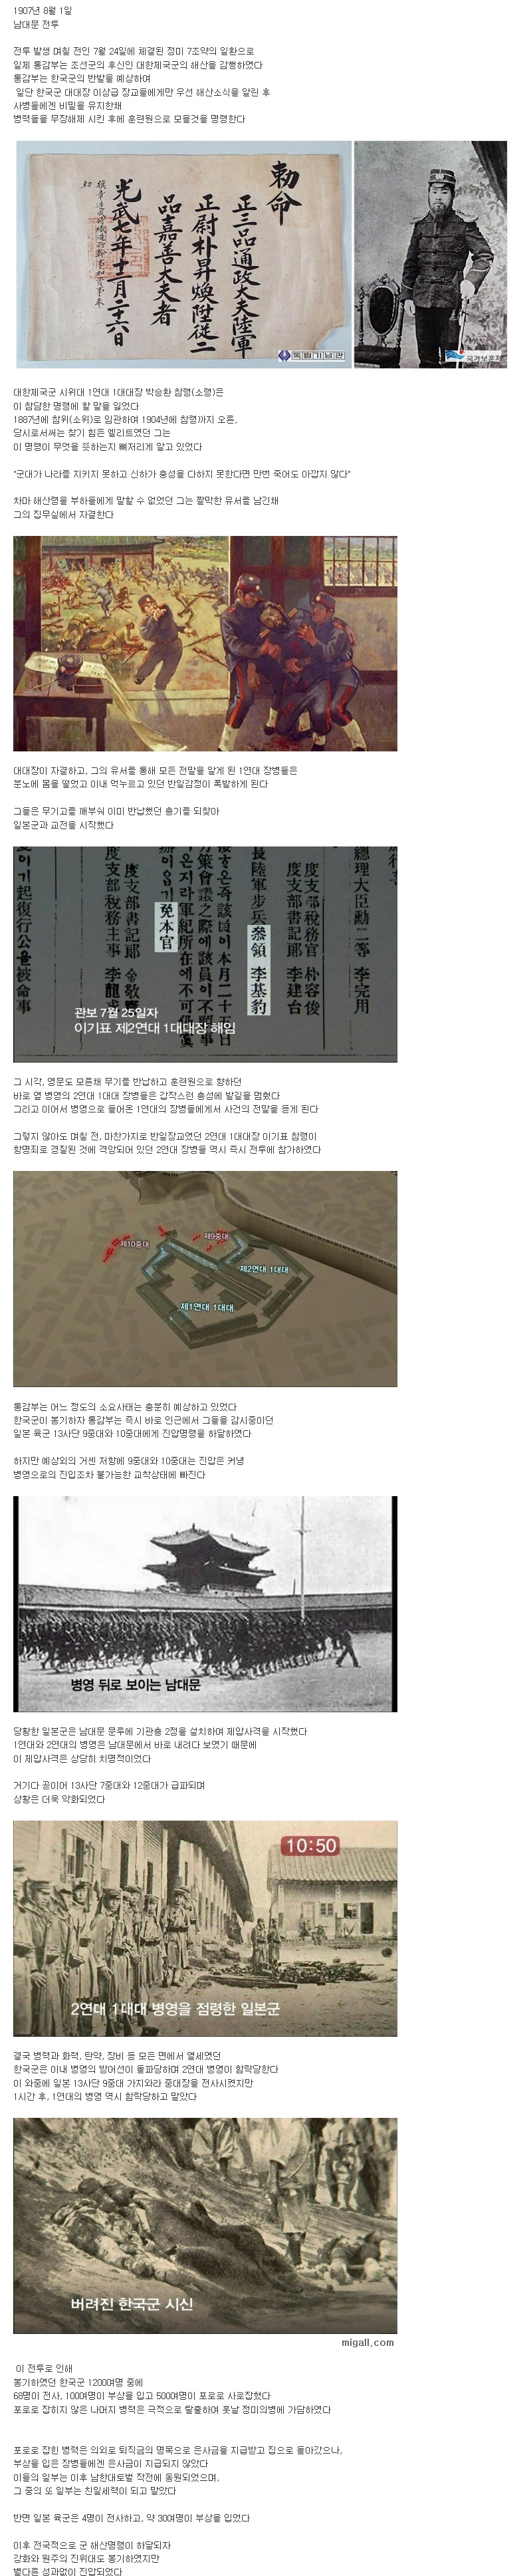 조선군의 마지막 전투 .jpg.jpg